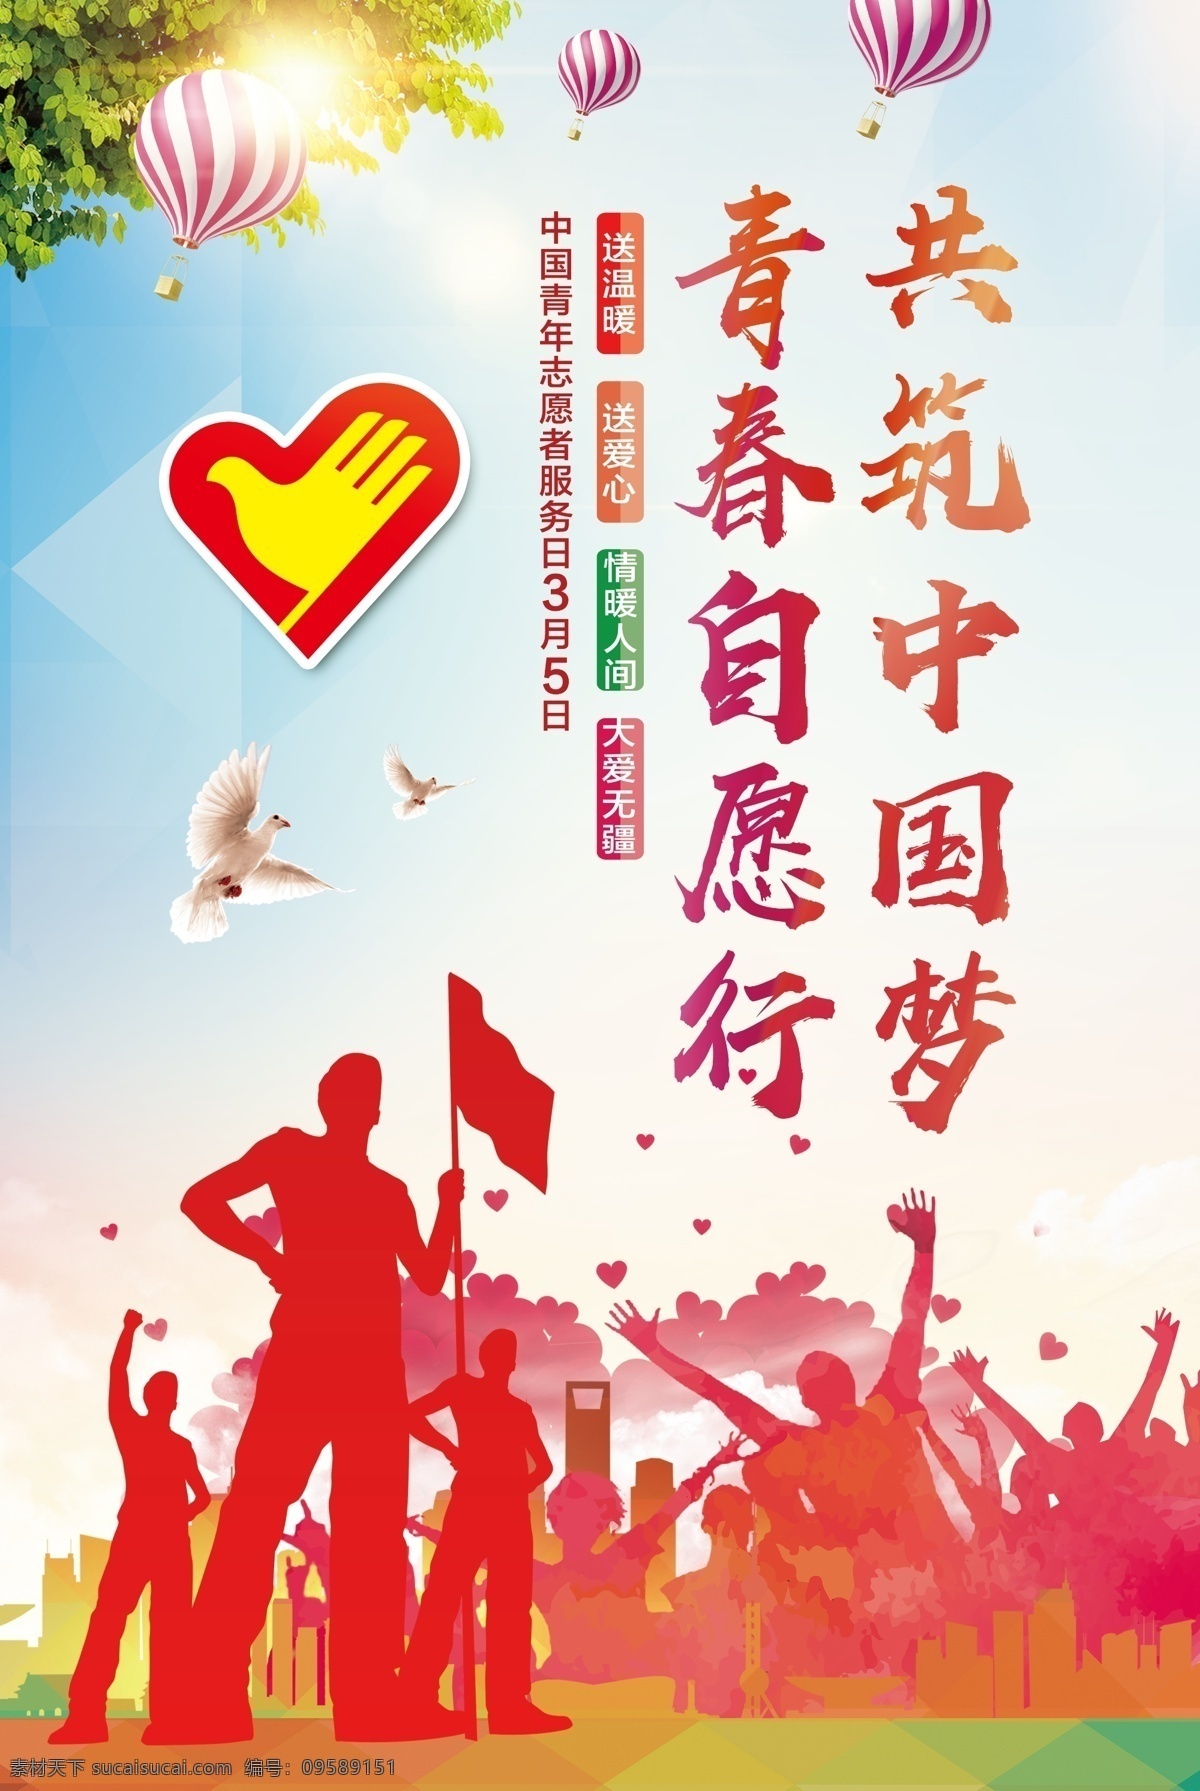 月 日 中国青年 志愿者 服务 宣传海报 志愿者海报 志愿者展板 雷锋精神 爱心在行动 志愿者活动 志愿者主题 志愿者招募 志愿者宣传 志愿者在行动 青年志愿者 爱心行动 服务志愿者